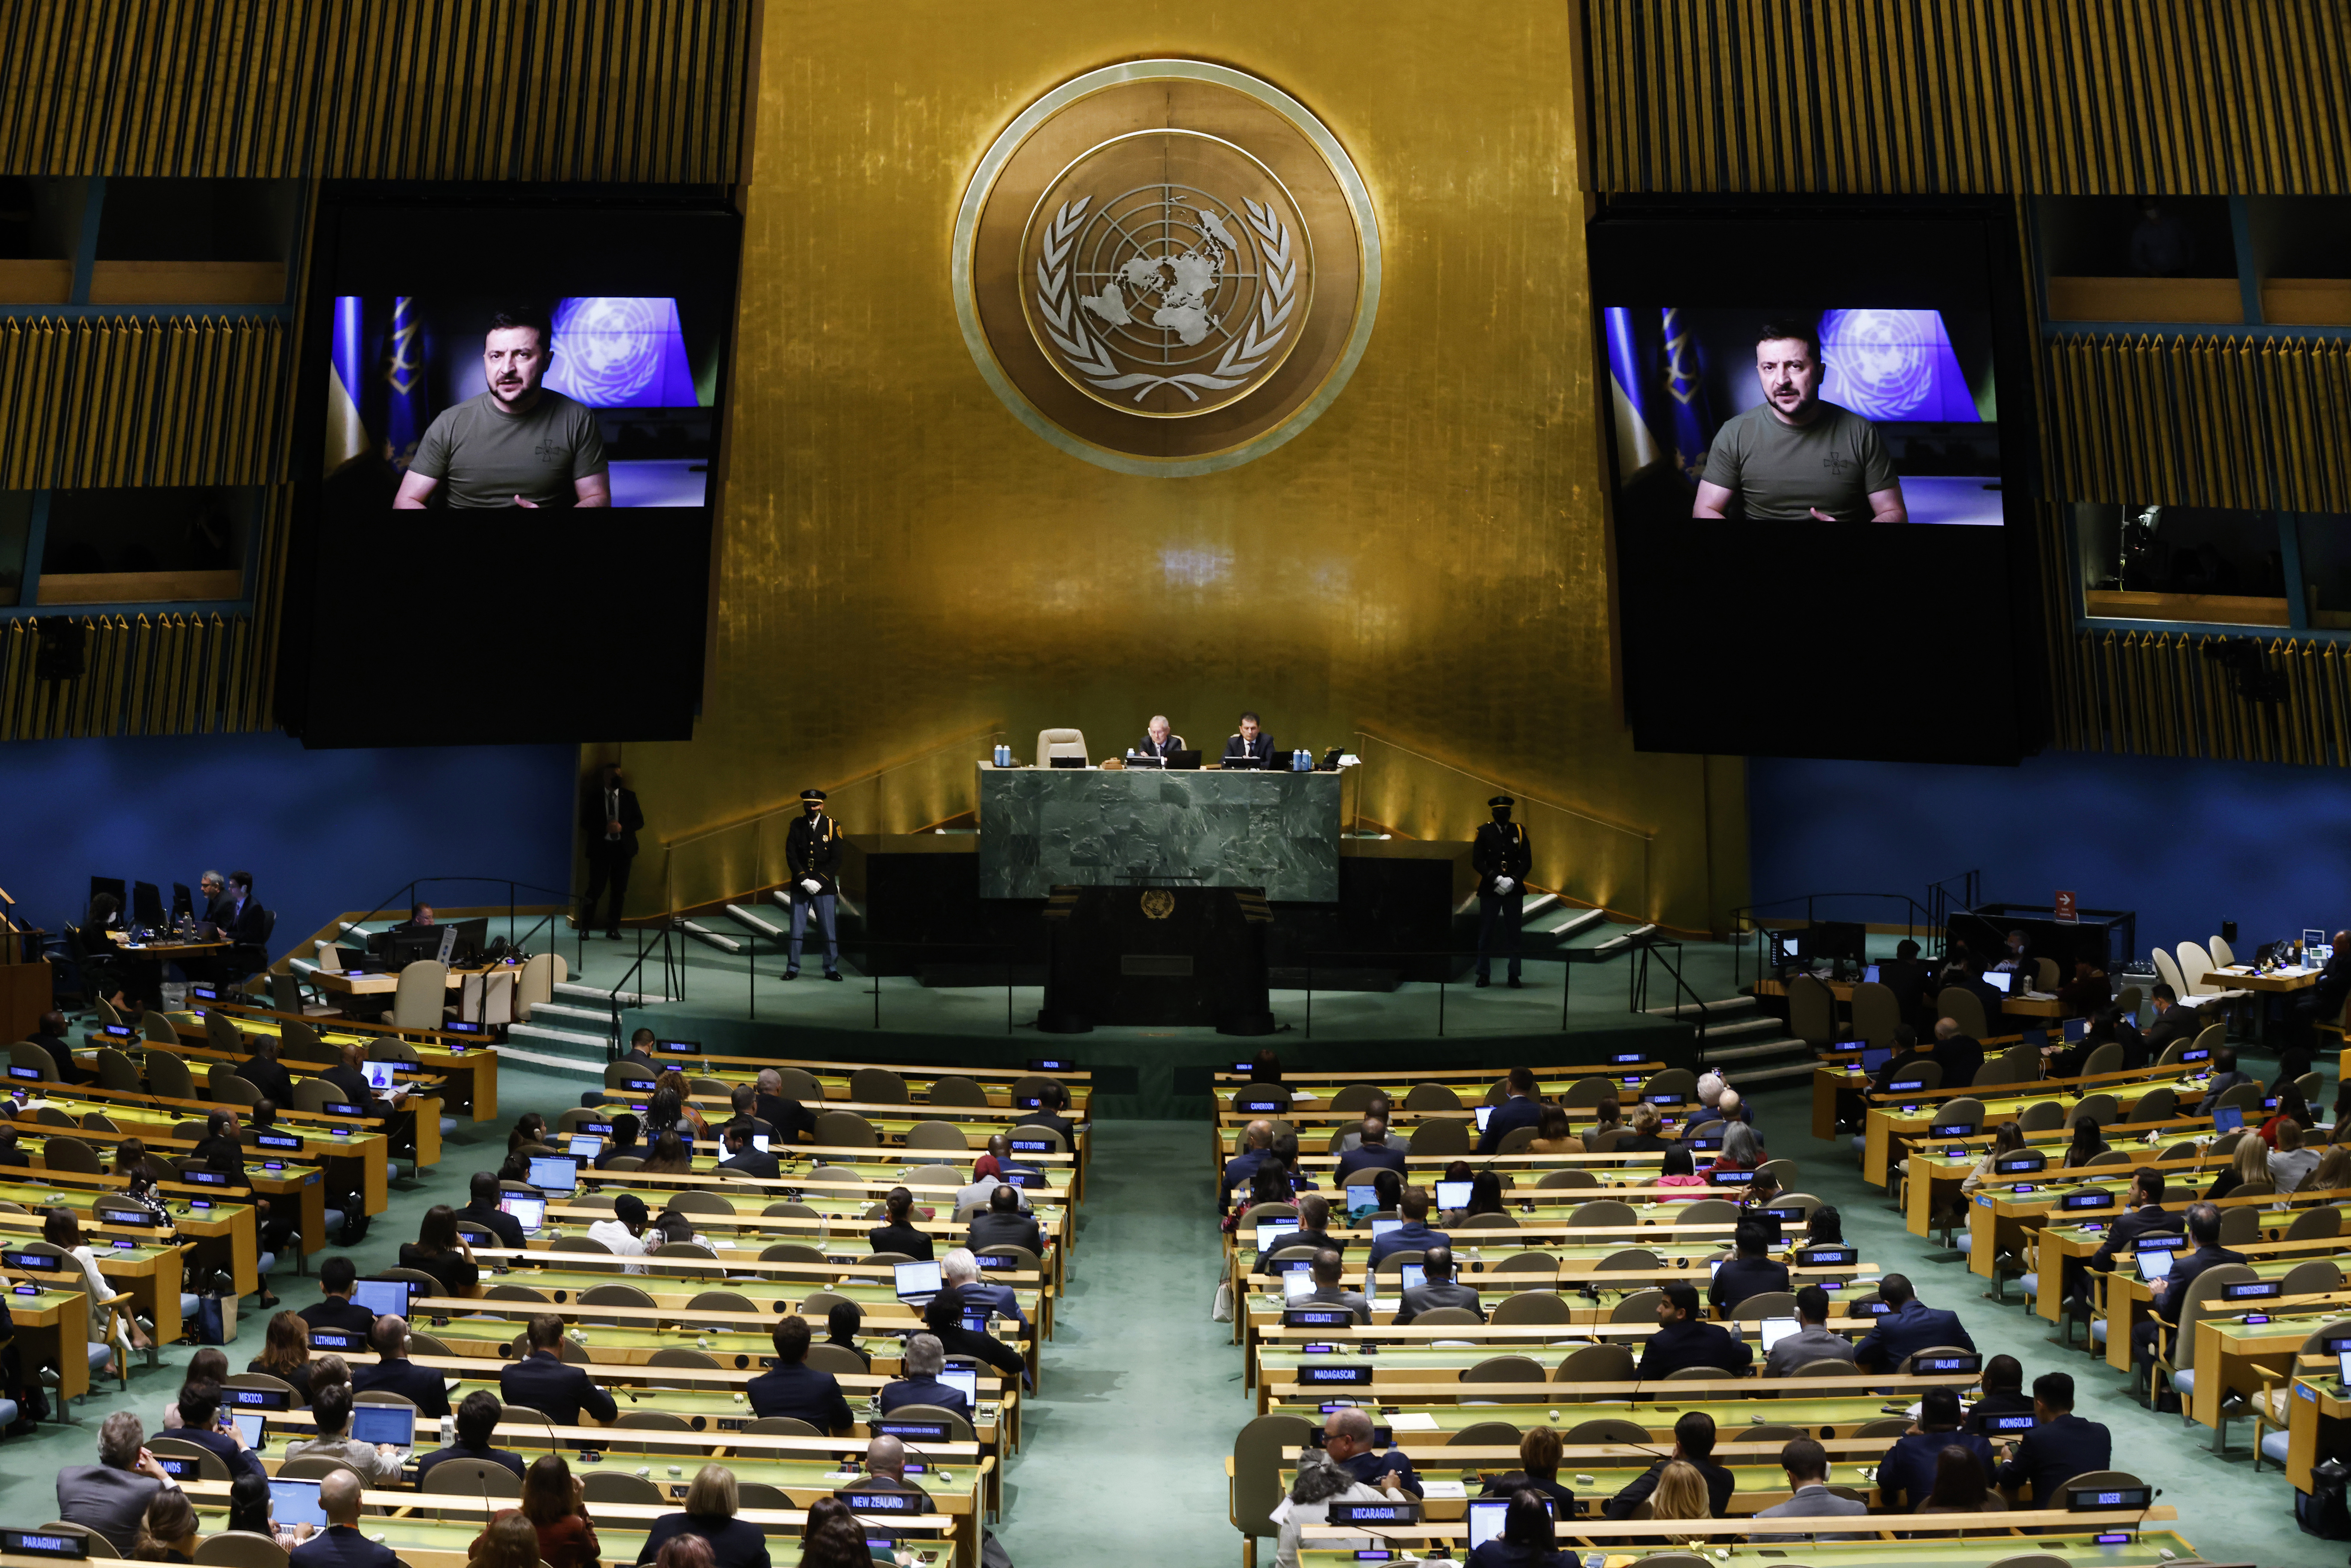 Selenskyj ist auf einem Bildschirm zu sehen, im Plenum sitzen Mitglieder der Generalversammlung